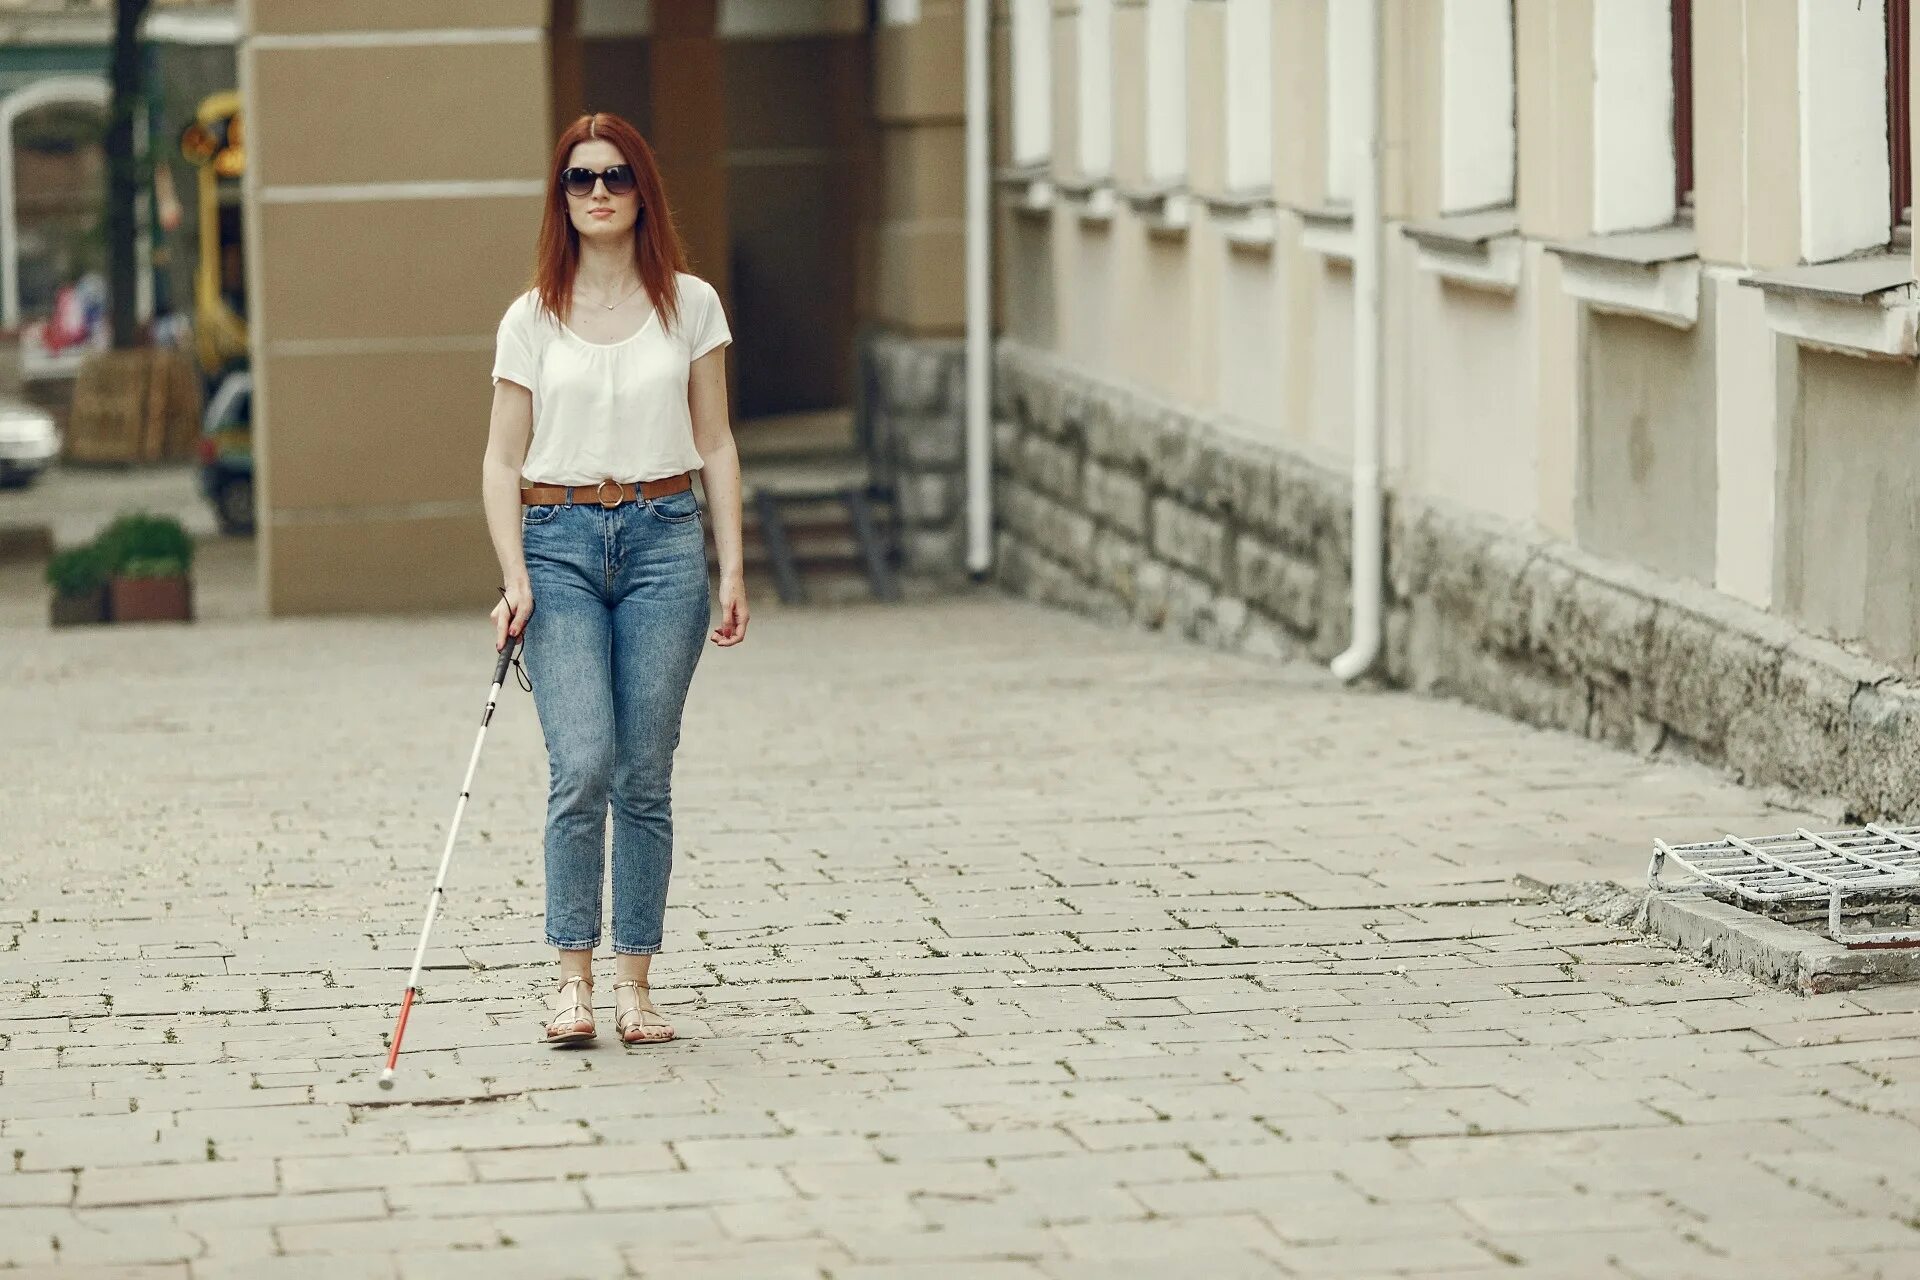 Жизнь слепых людей. Джуэл Шупинг. Слепые люди с тростью. Девушка ходит с тростью. Слабовидящая девушка.